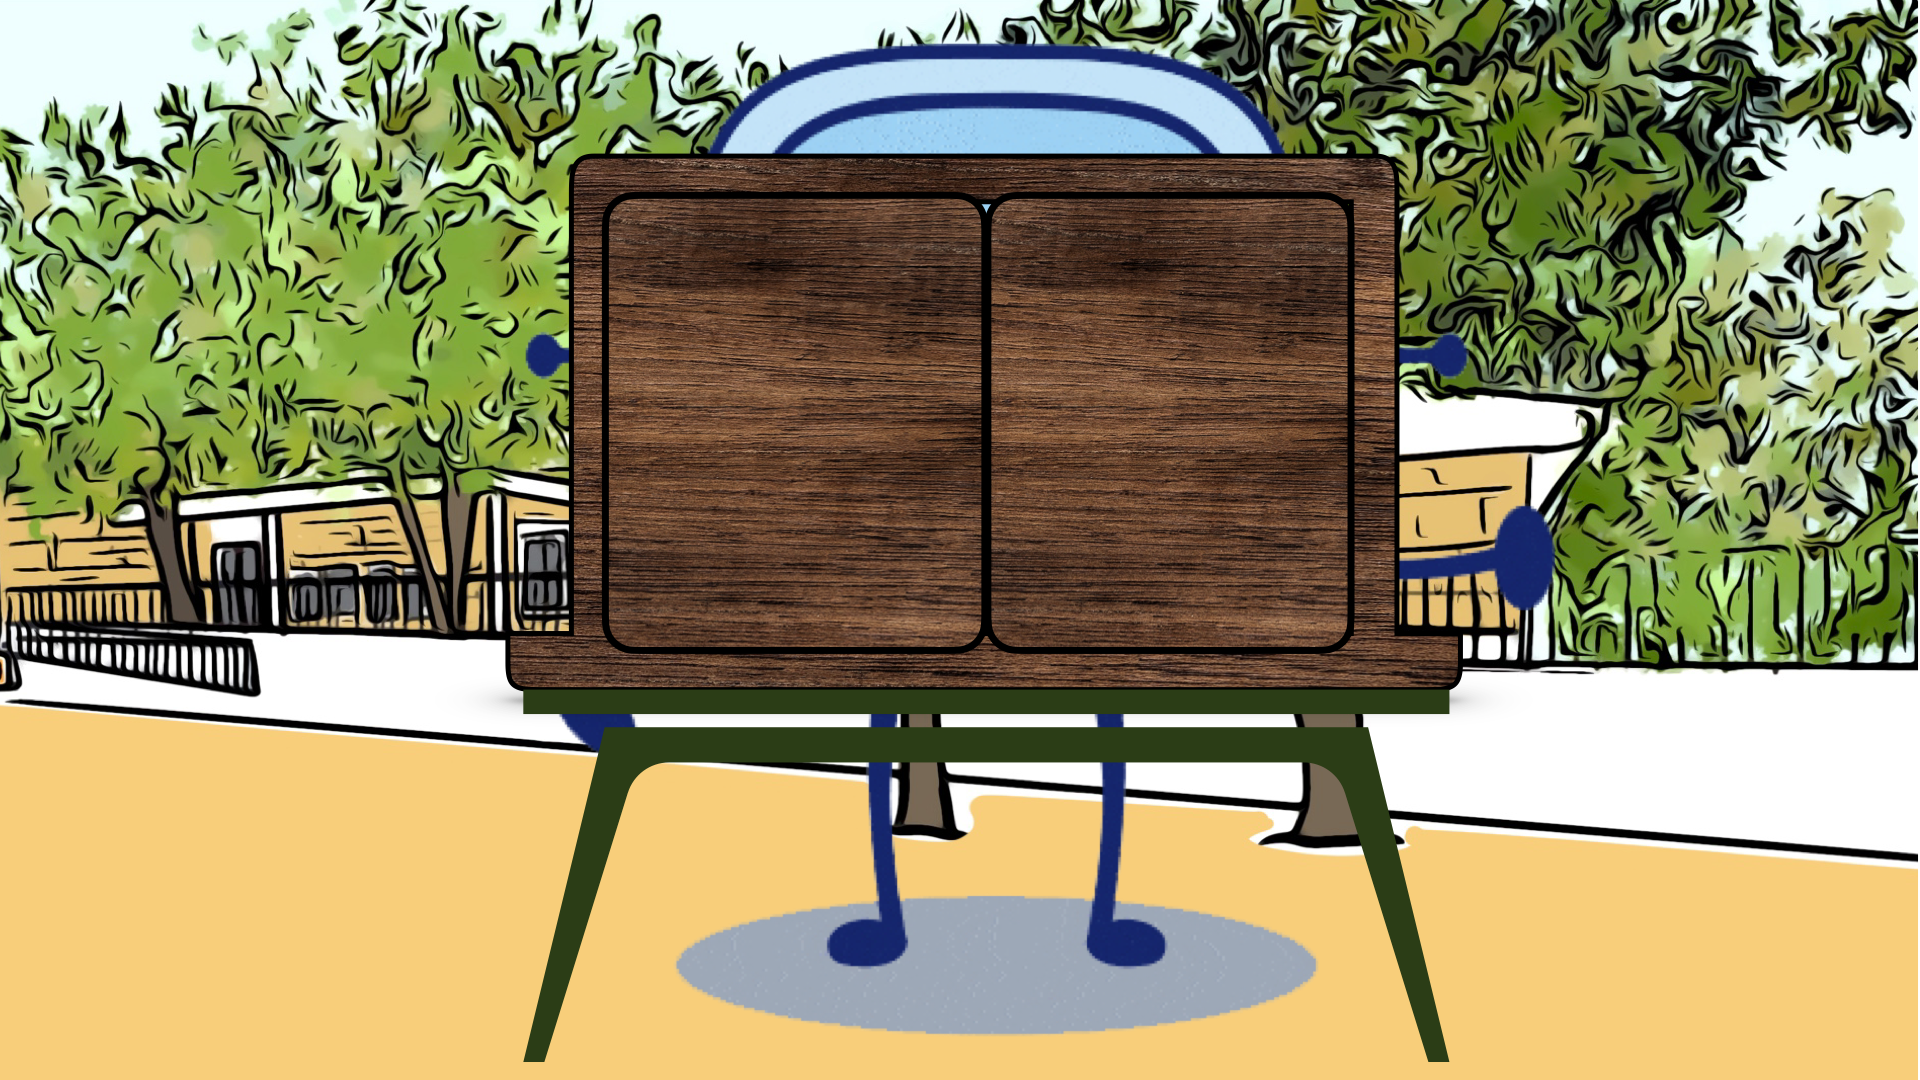 Aparece un butai de madera sobre una mesa verde.. Tiene dos puertas pero está cerrado. Detrás de él está Rétor. Se encuentra en el patio de un colegio rodeado de árboles.